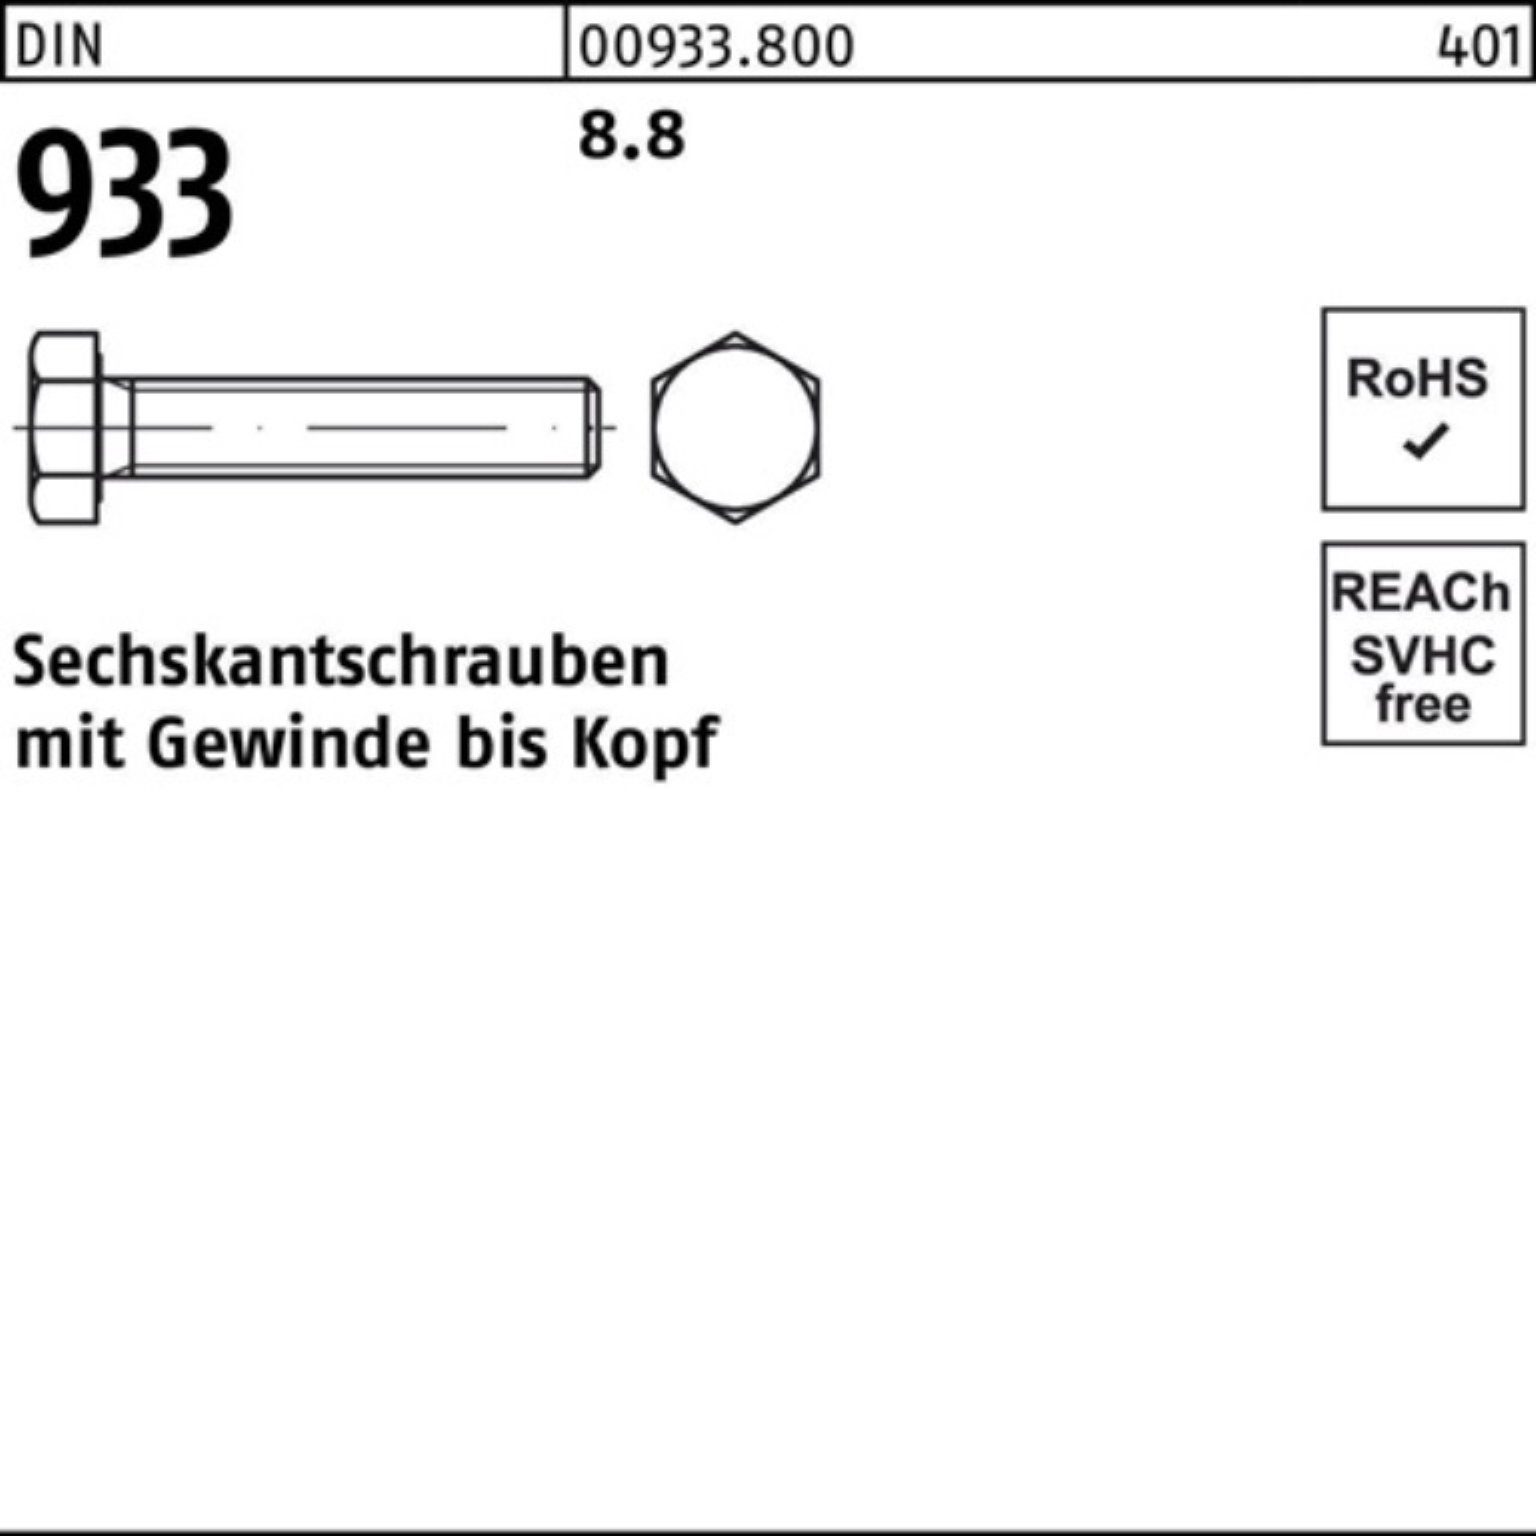 150 Sechskantschraube Reyher 100 Pack 100er 8.8 DIN Stück Sechskantschraube M8x VG 933 933 DIN